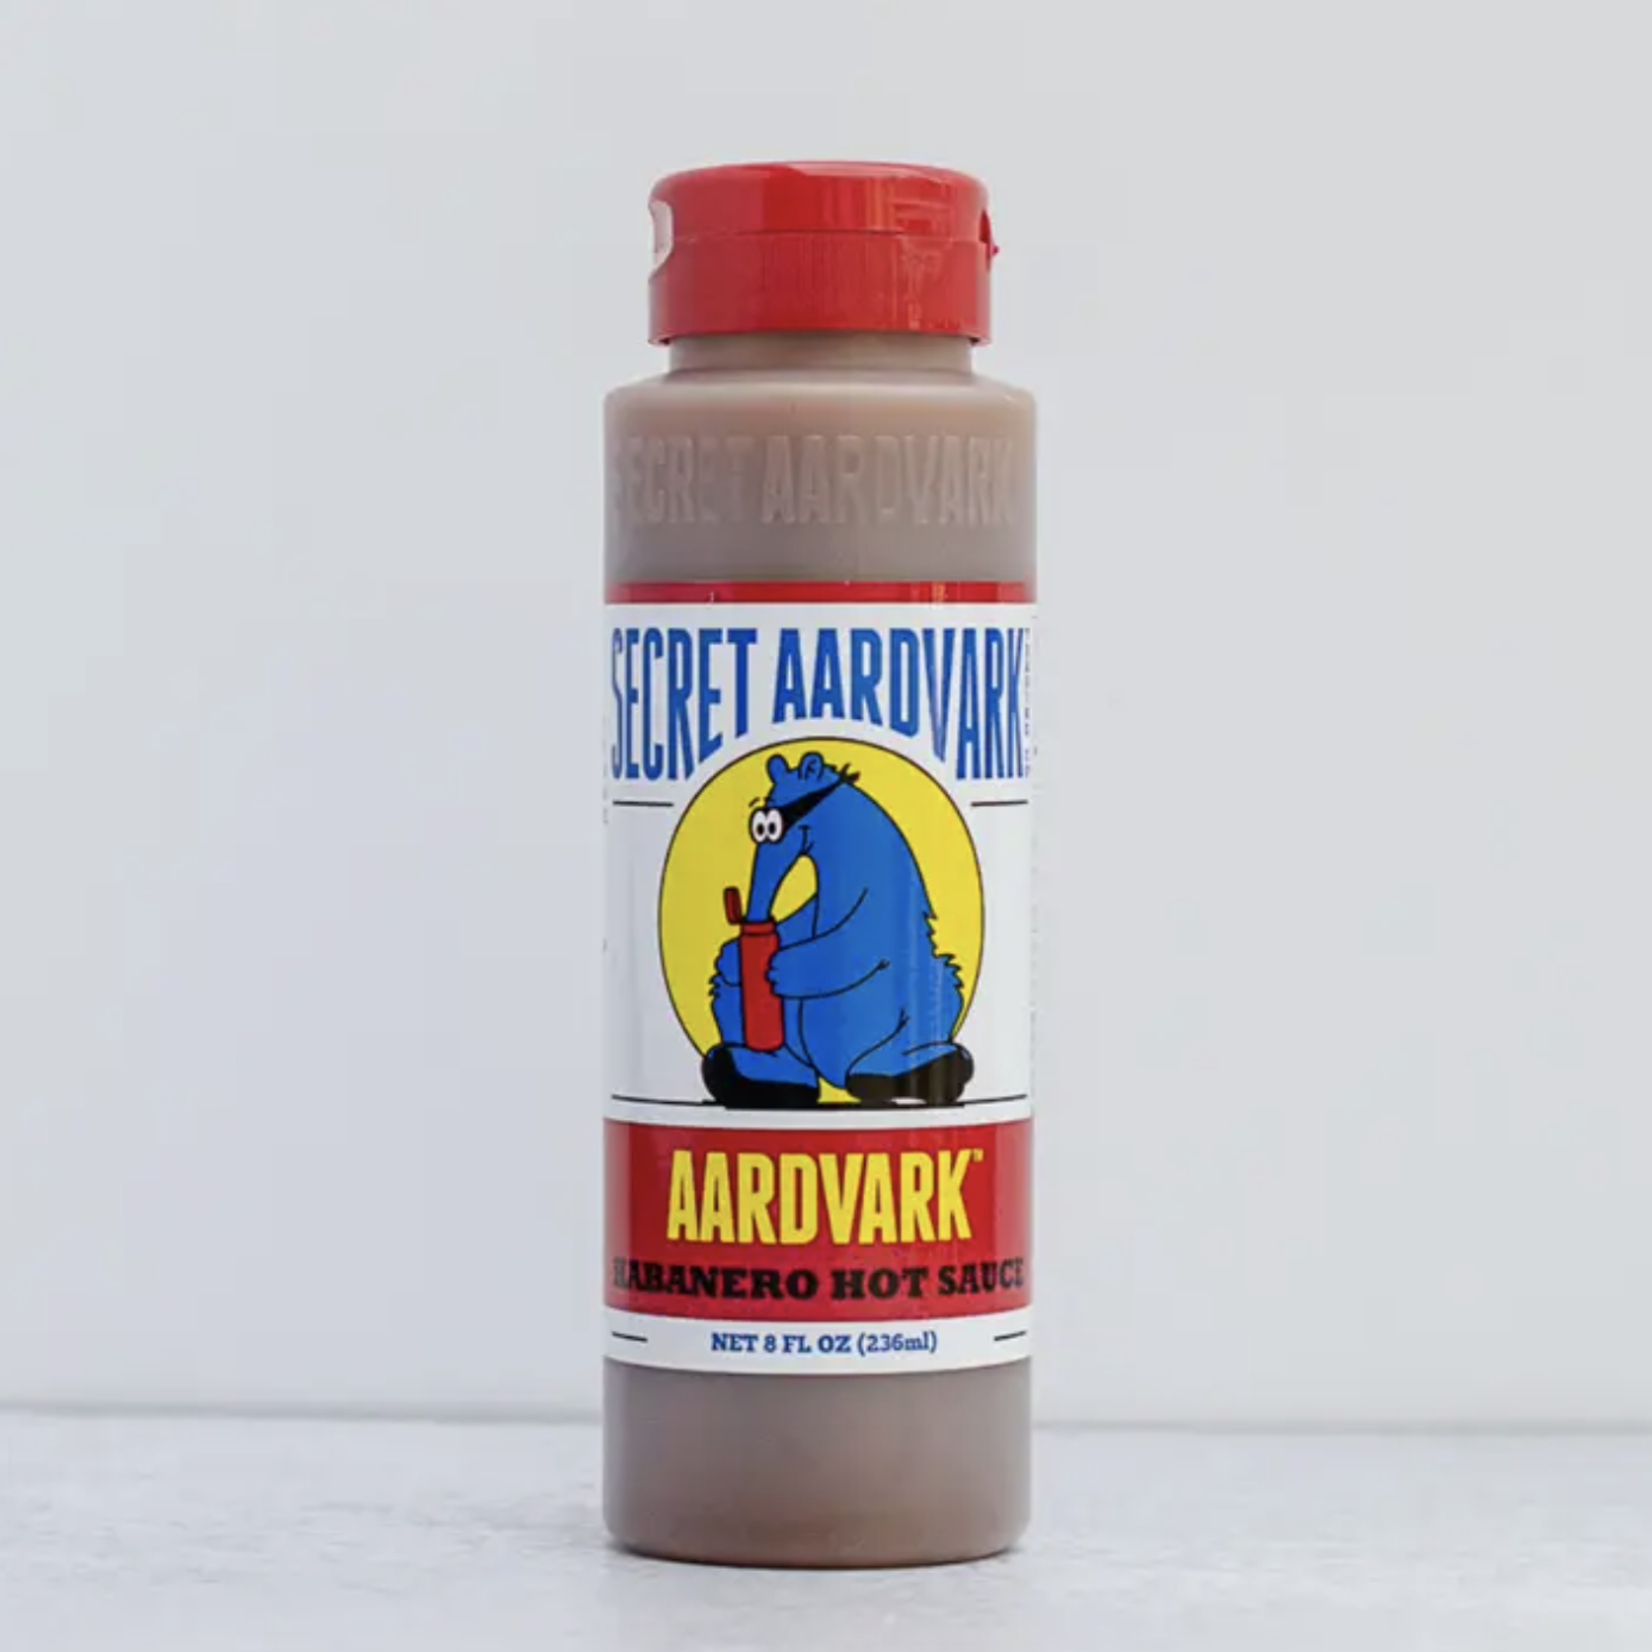 Secret Aardvark Aardvark Habnero Hot Sauce